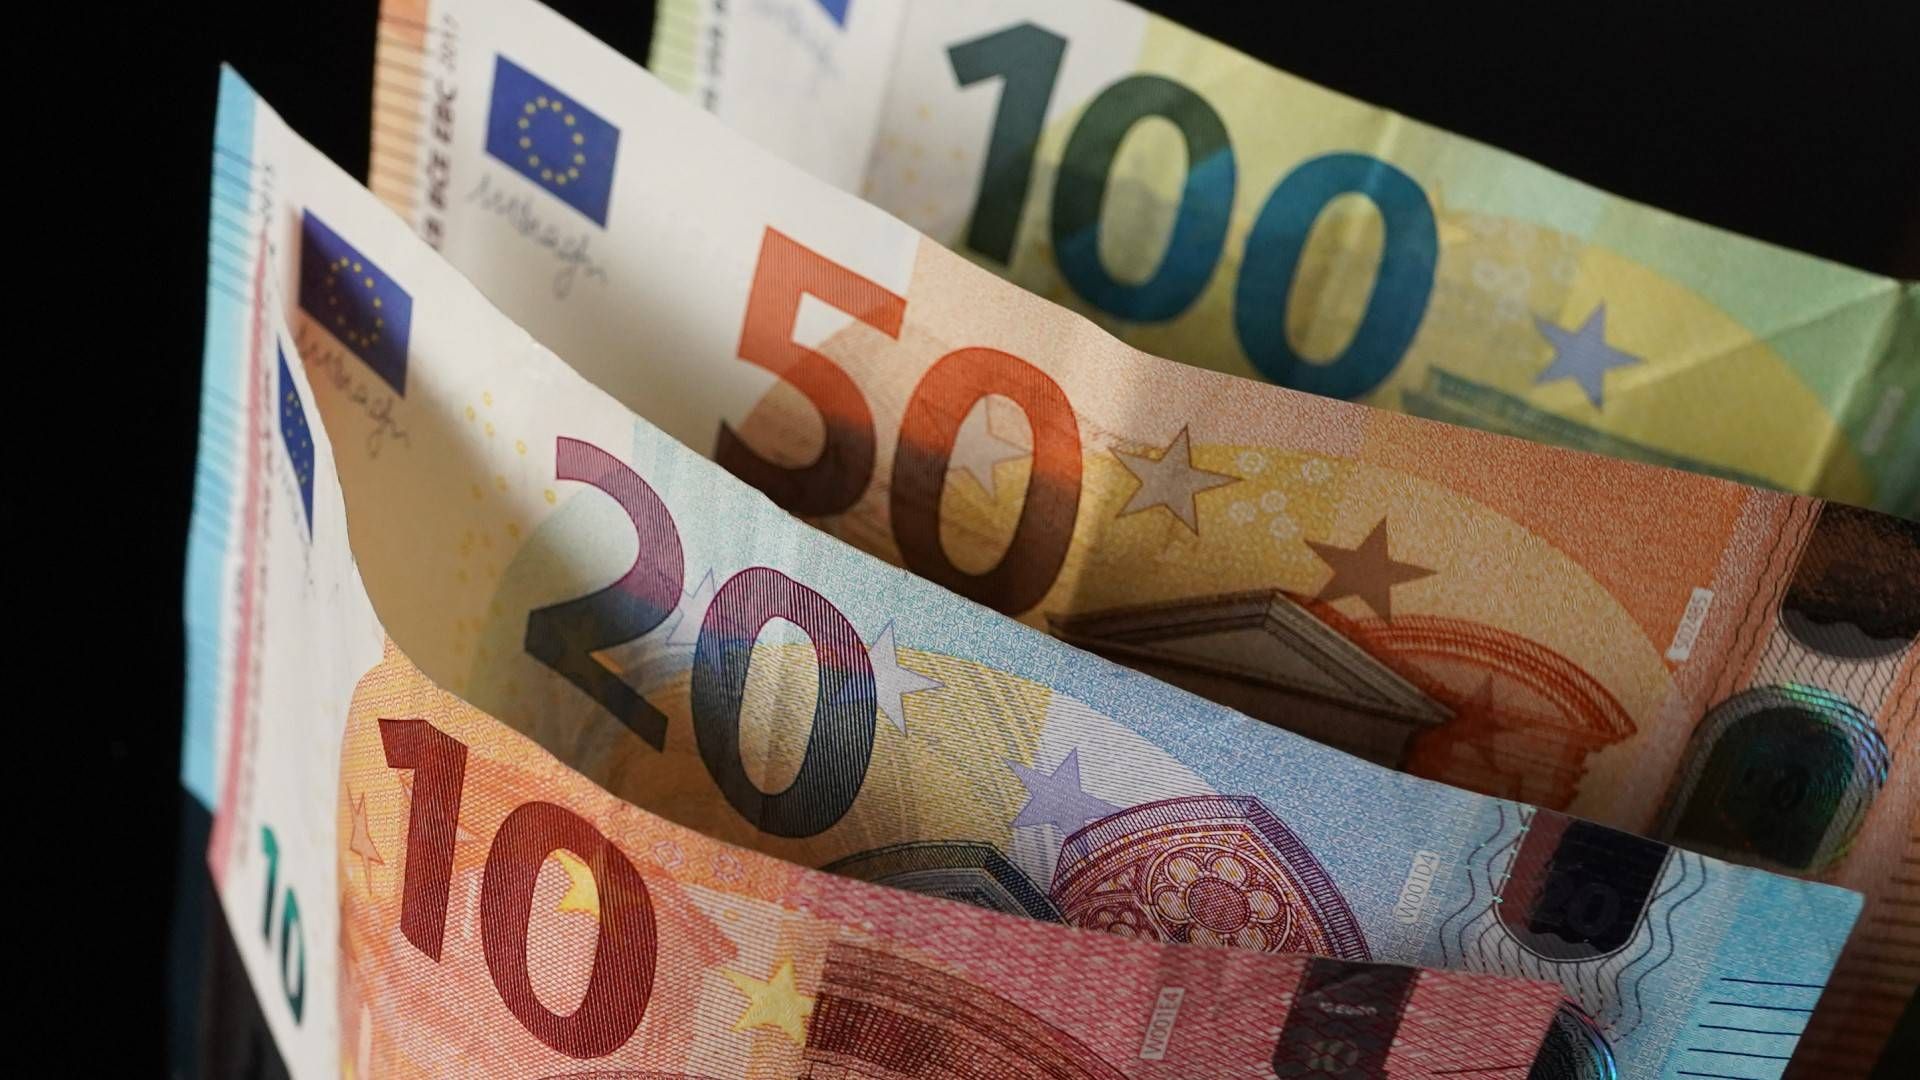 Verschiedene Geldscheine mit den Werten 10, 20, 50 und 100 Euro stehen nebeneinander. | Foto: picture alliance/dpa | Jörg Carstensen